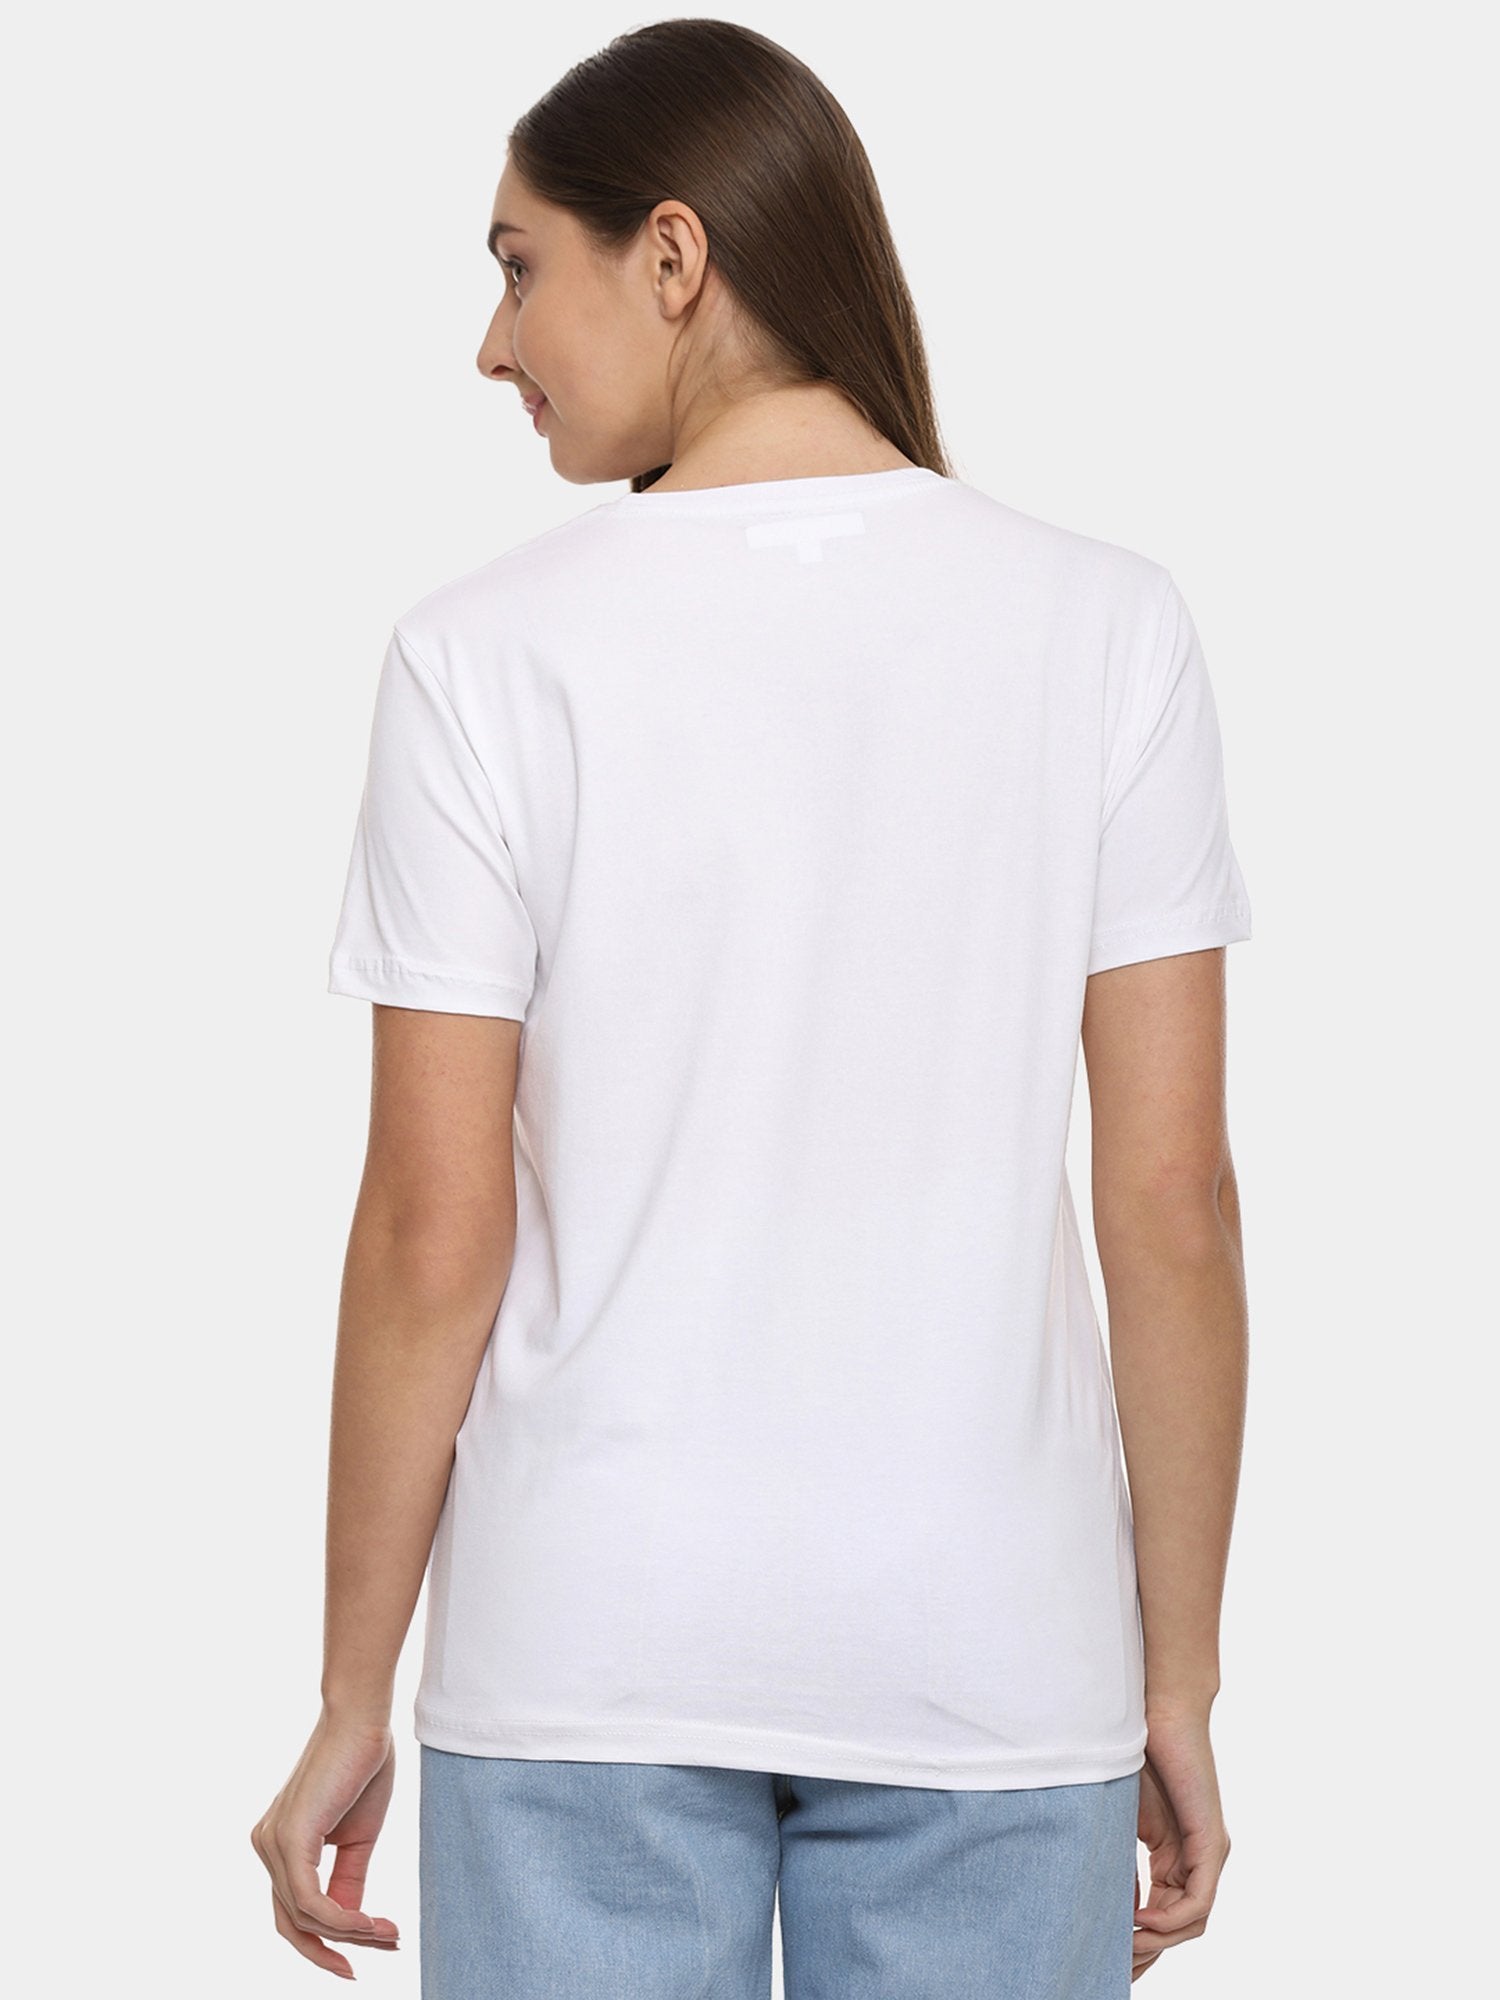 IS.U White Round Neck T-shirt